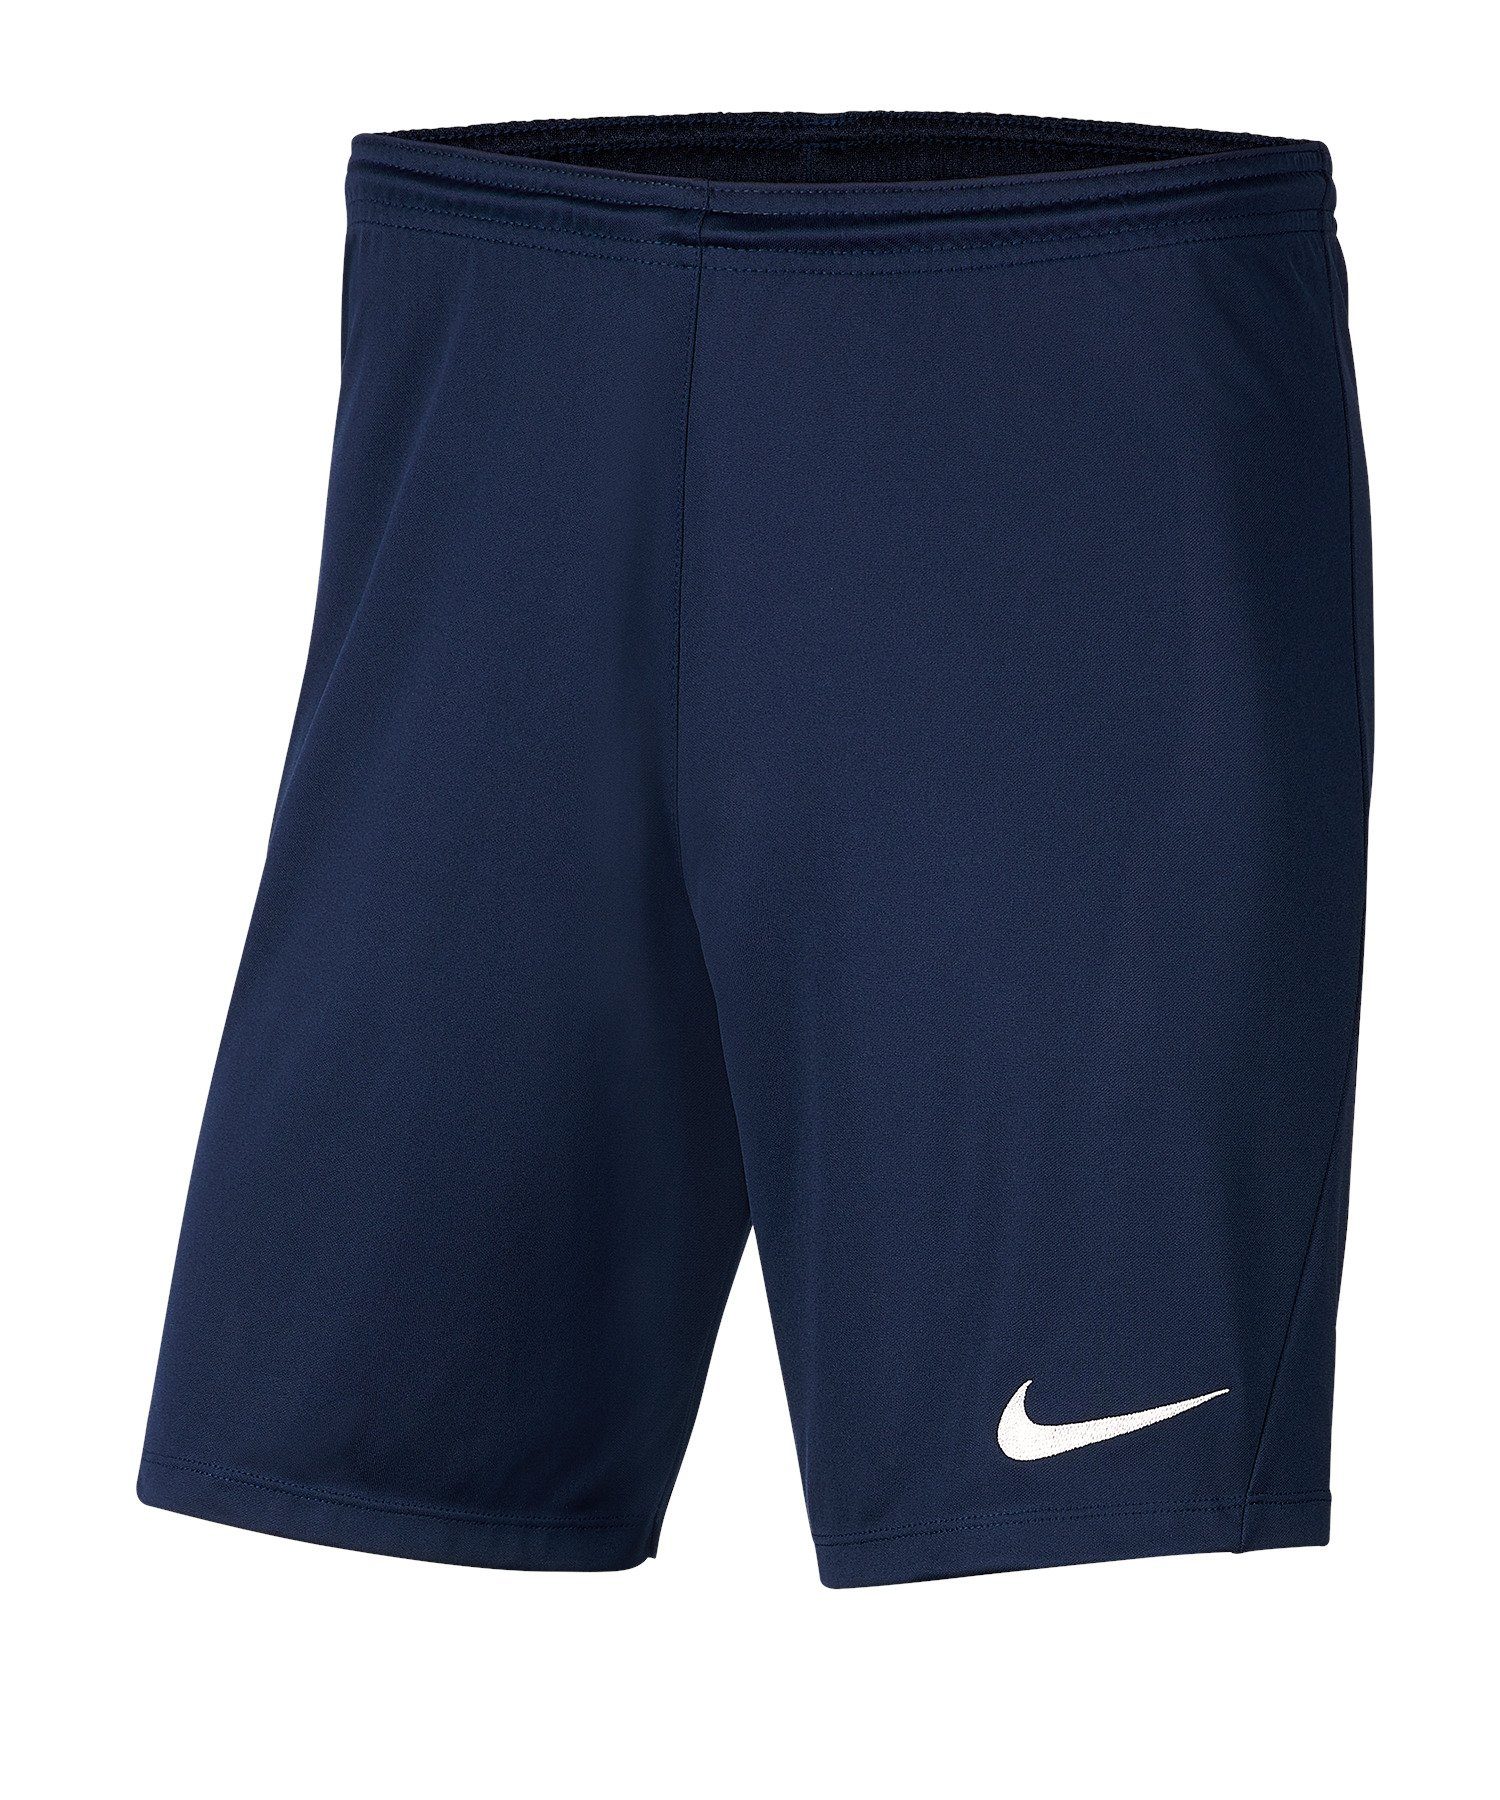 Nike Sporthose Park III Short blaublau